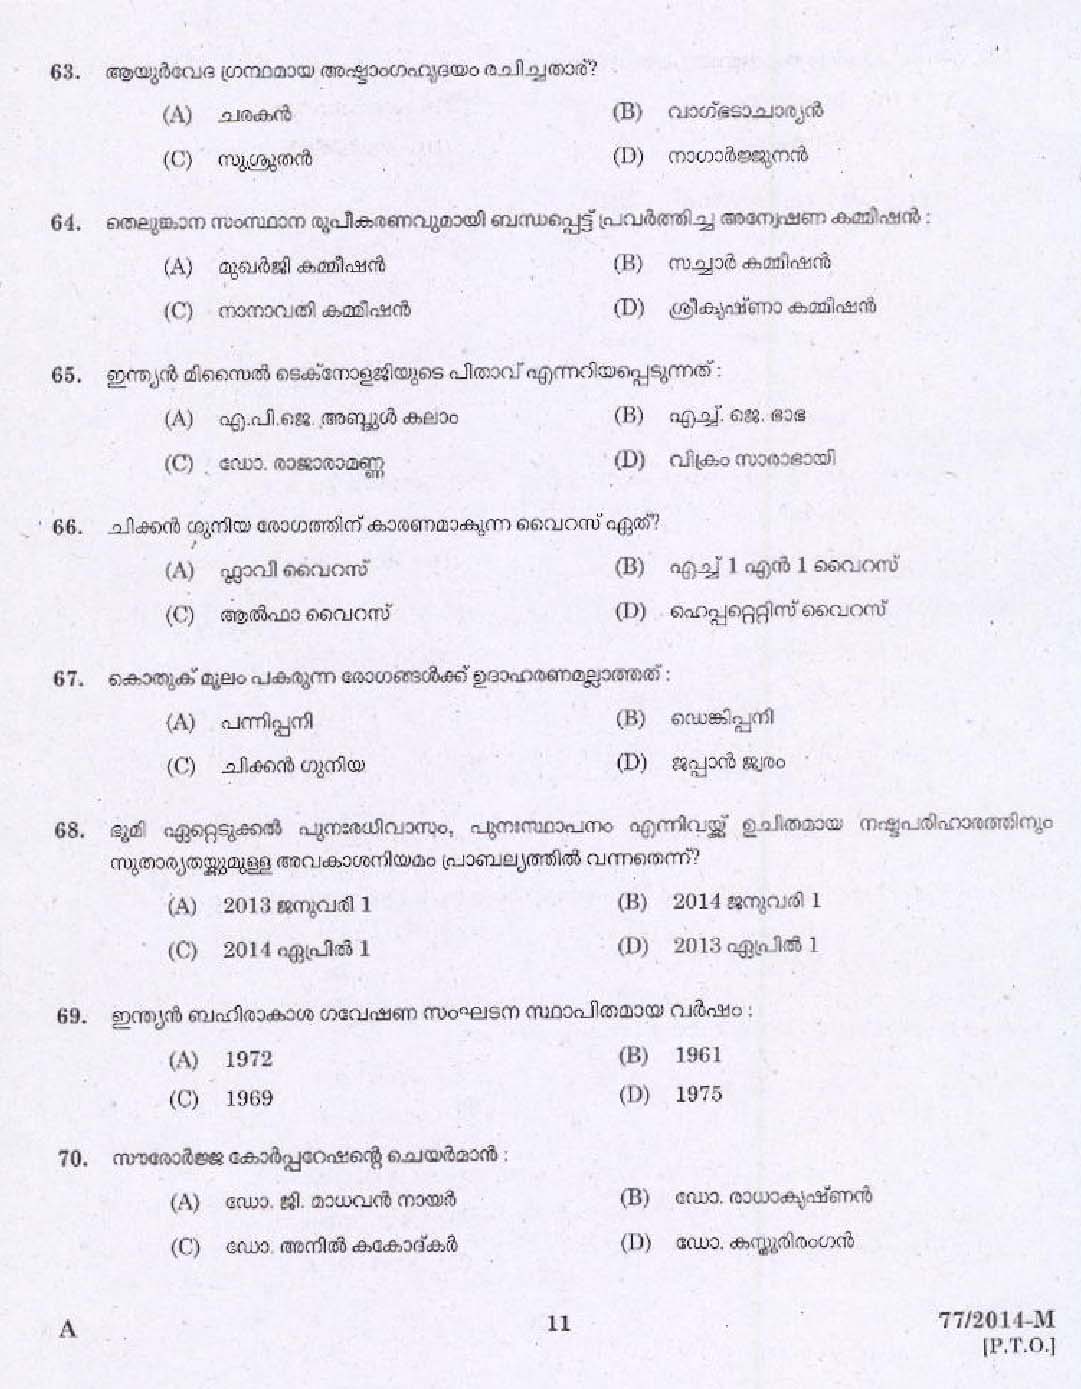 KPSC Village Extension Officer Grade II Exam 2014 Code 772014 M 9